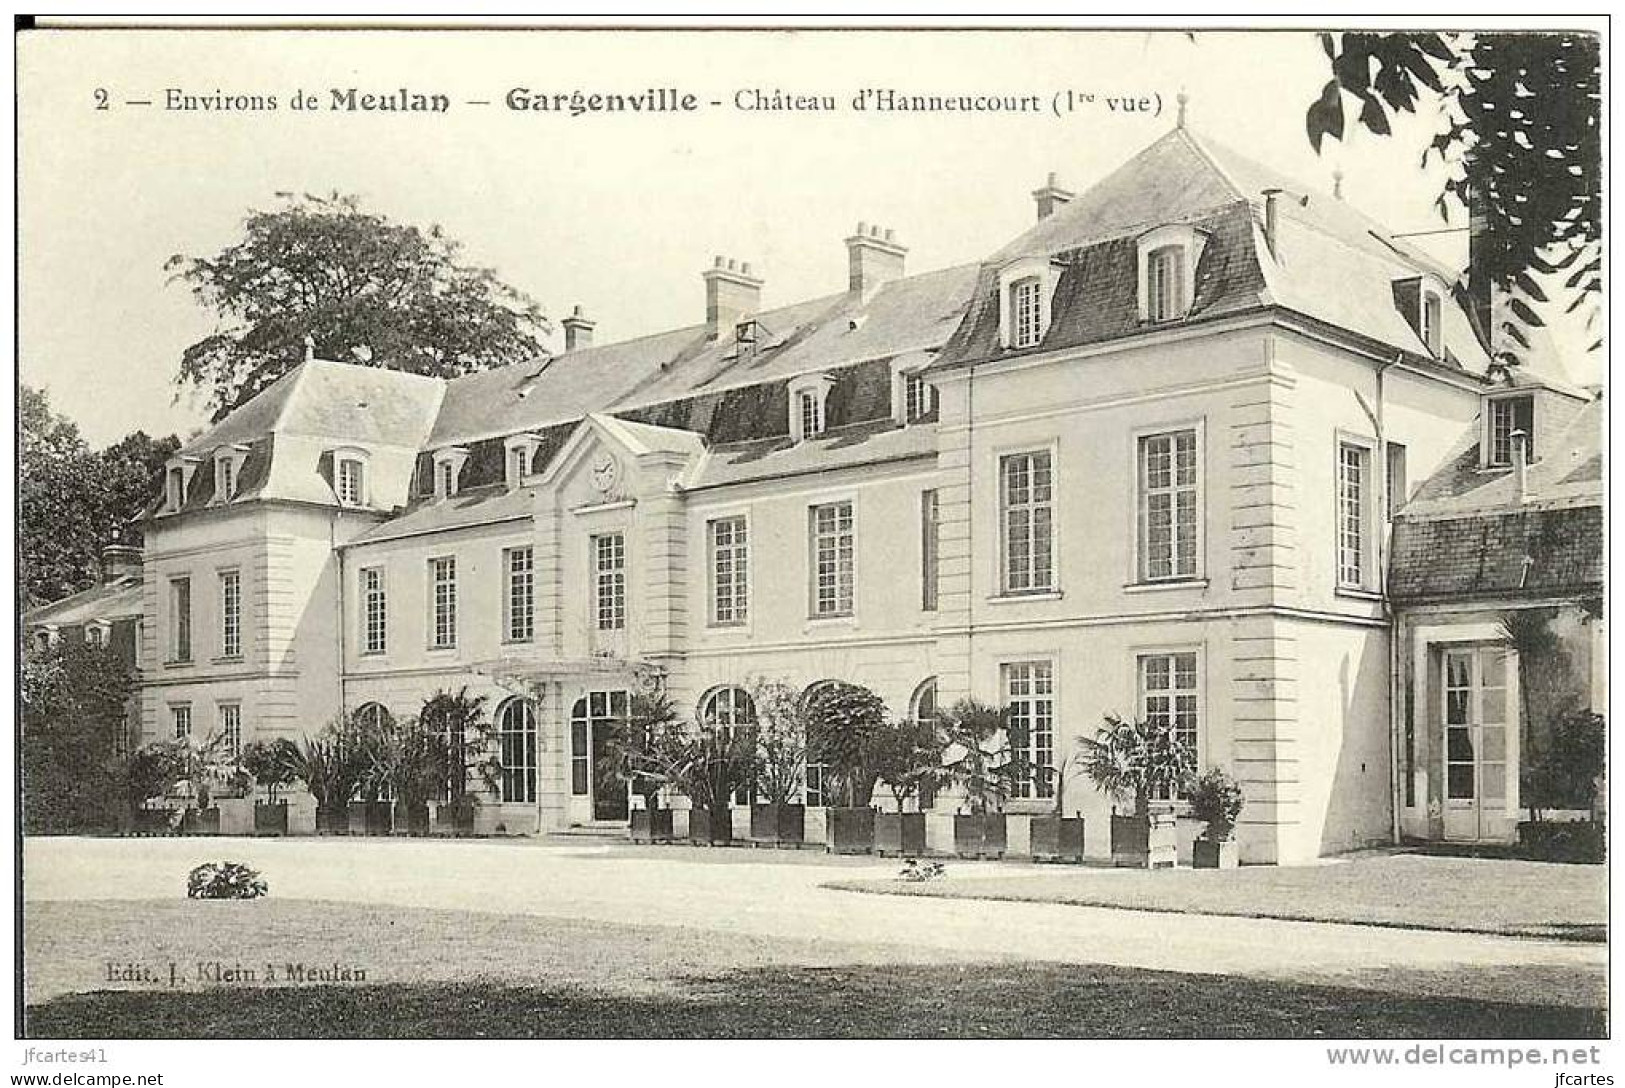 78 - GARGENVILLE - Environs De Meulan - Château D'Hannecourt (1ere Vue) - Gargenville